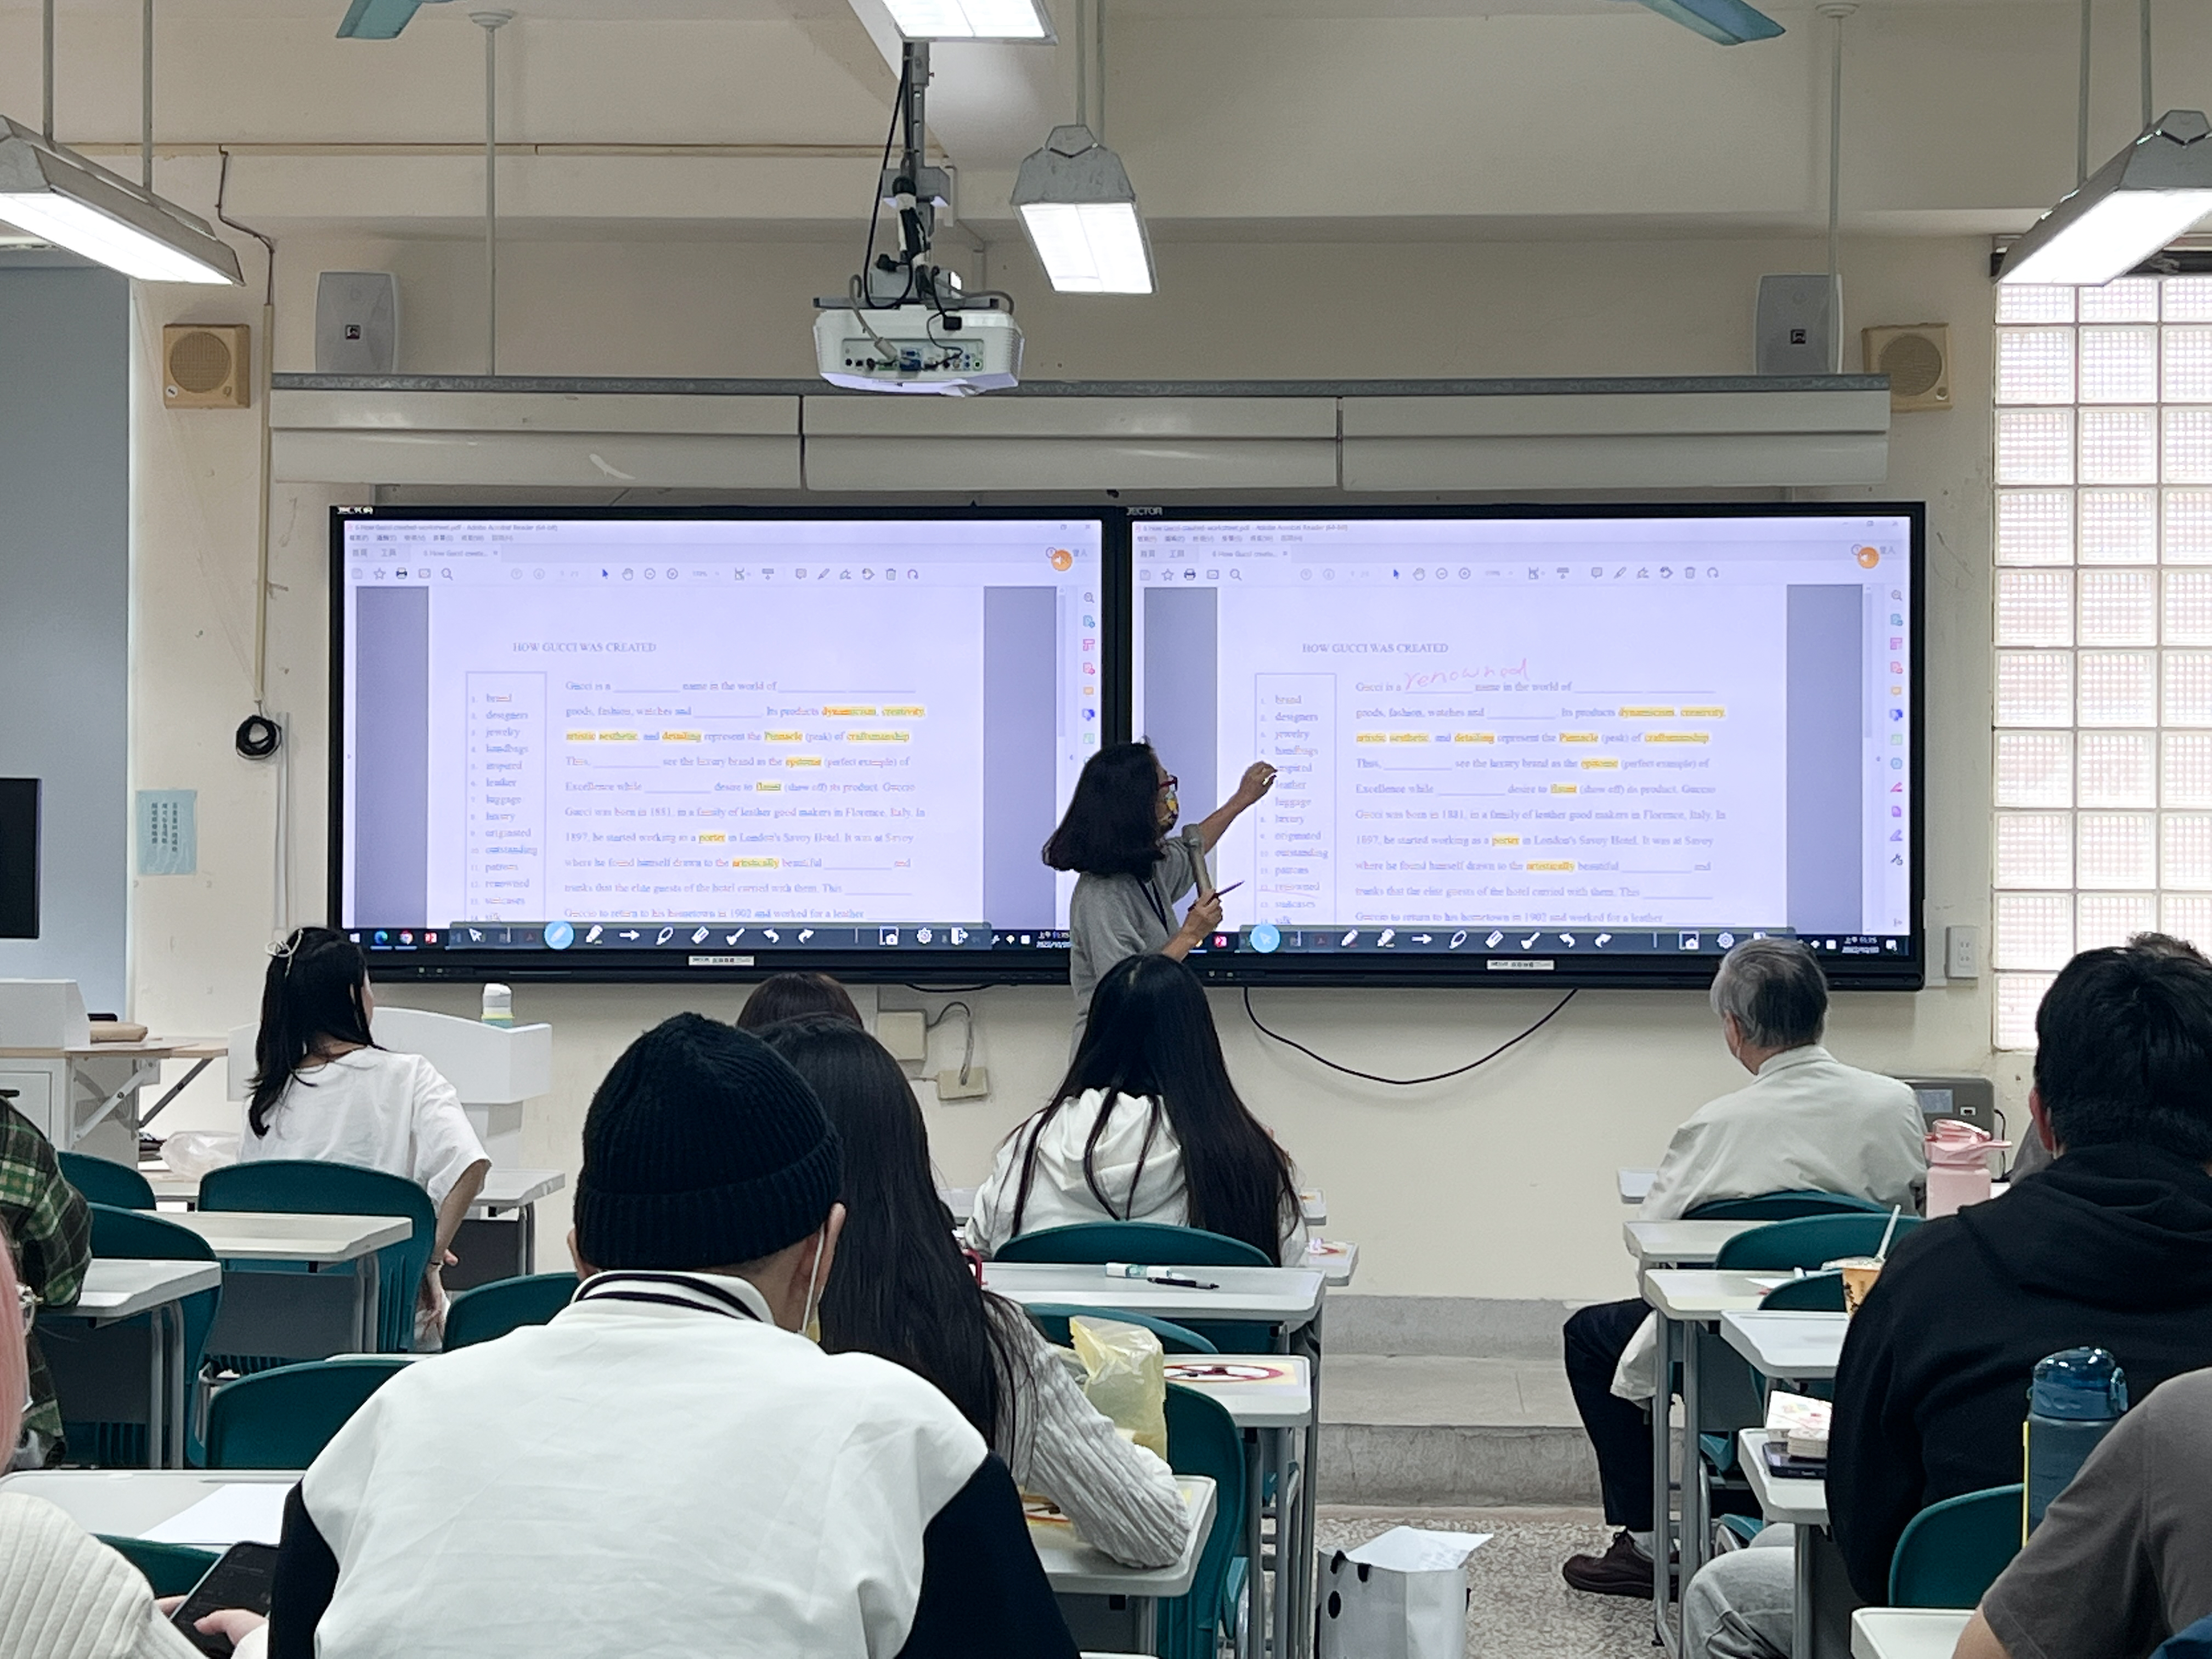 德 明 財 經 科 技 大 學 目 前 已 有 十 五 間 教 室 裝 設 觸 控 螢 幕 。 